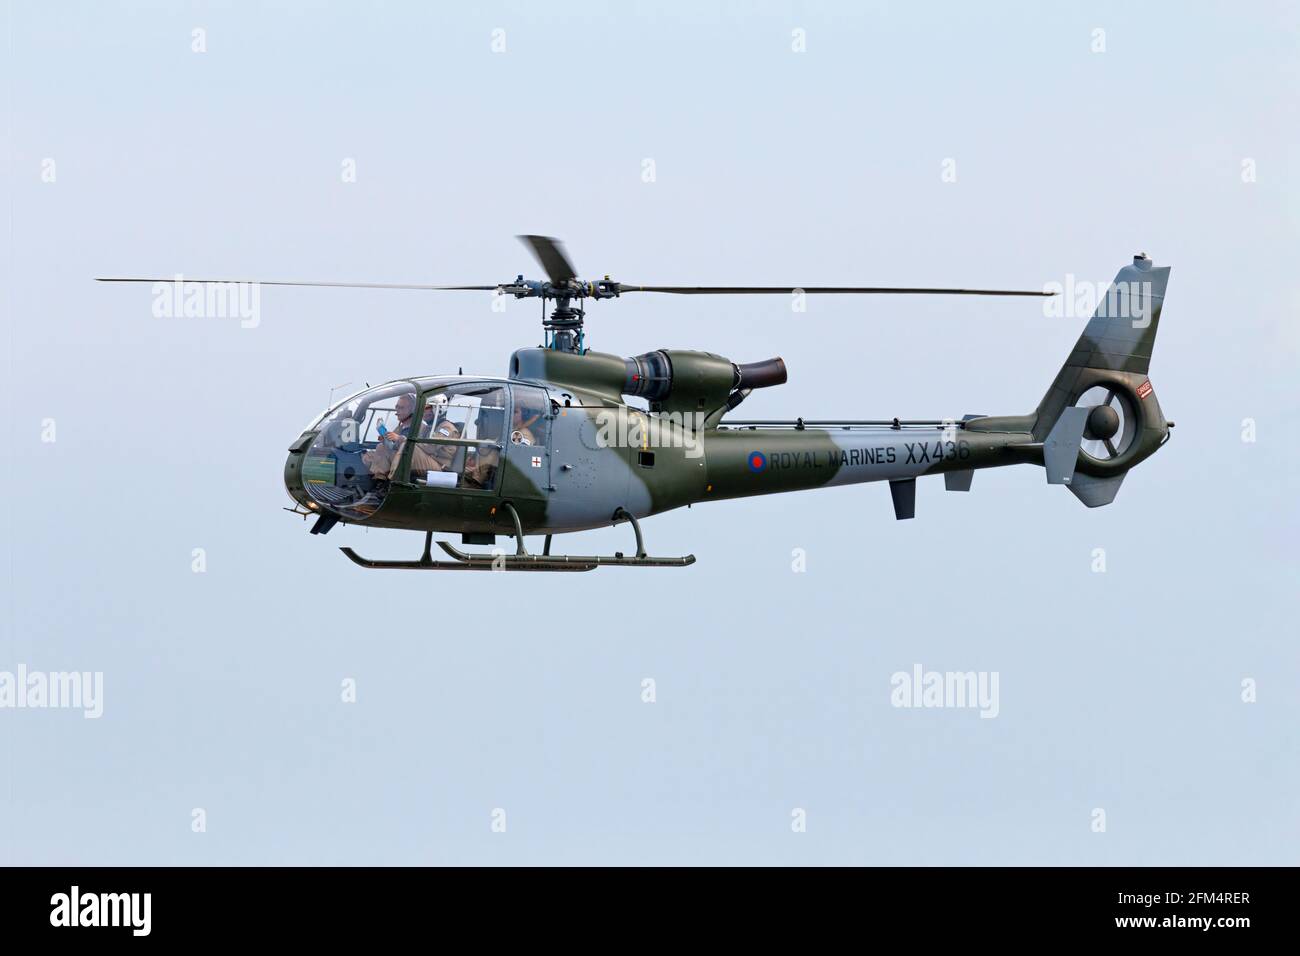 Helicóptero Westland Aerospatiale Gazelle de los Royal Marines Británicos Foto de stock